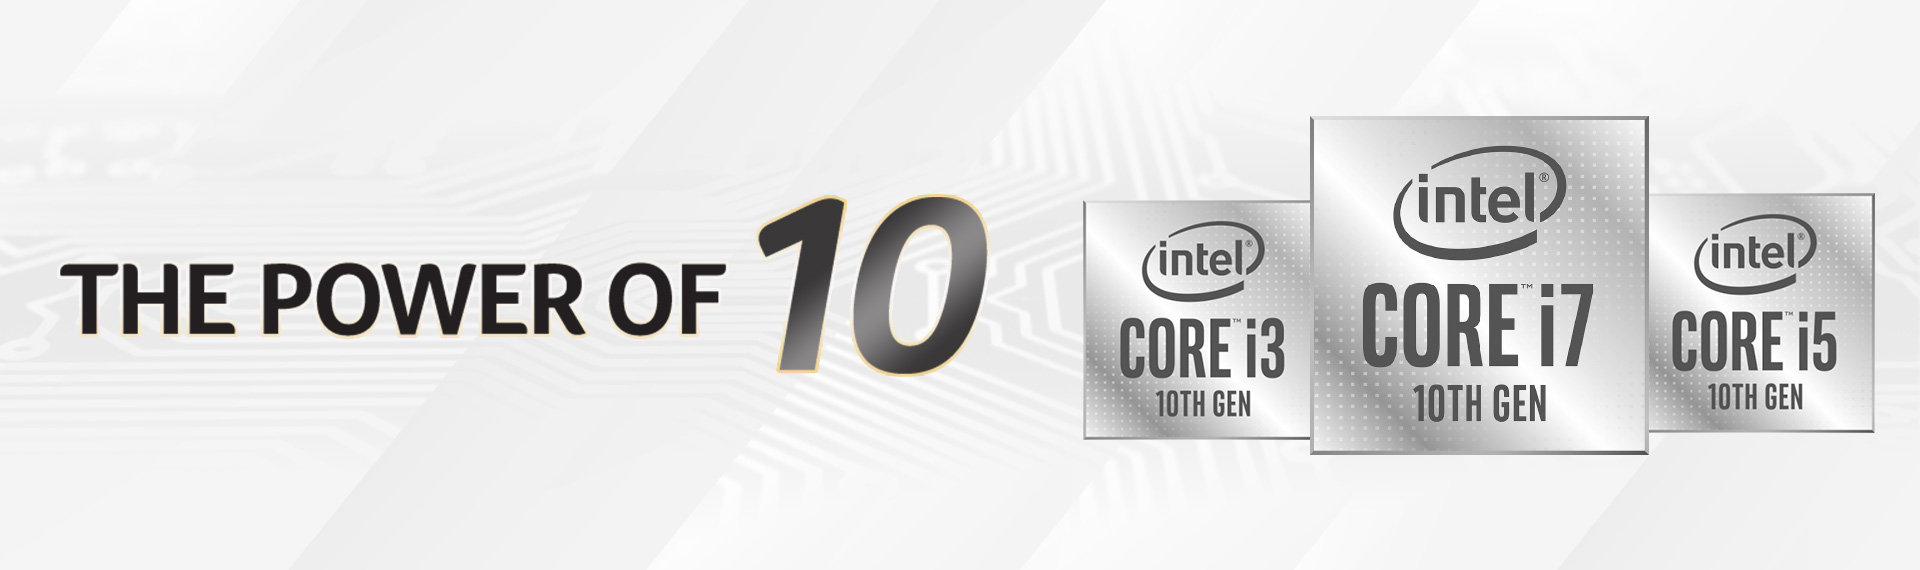 Performa Tinggi dalam Balutan Desain Tipis, Laptop dan Desktop All-in-One Terbaru dengan Intel 10th Gen!